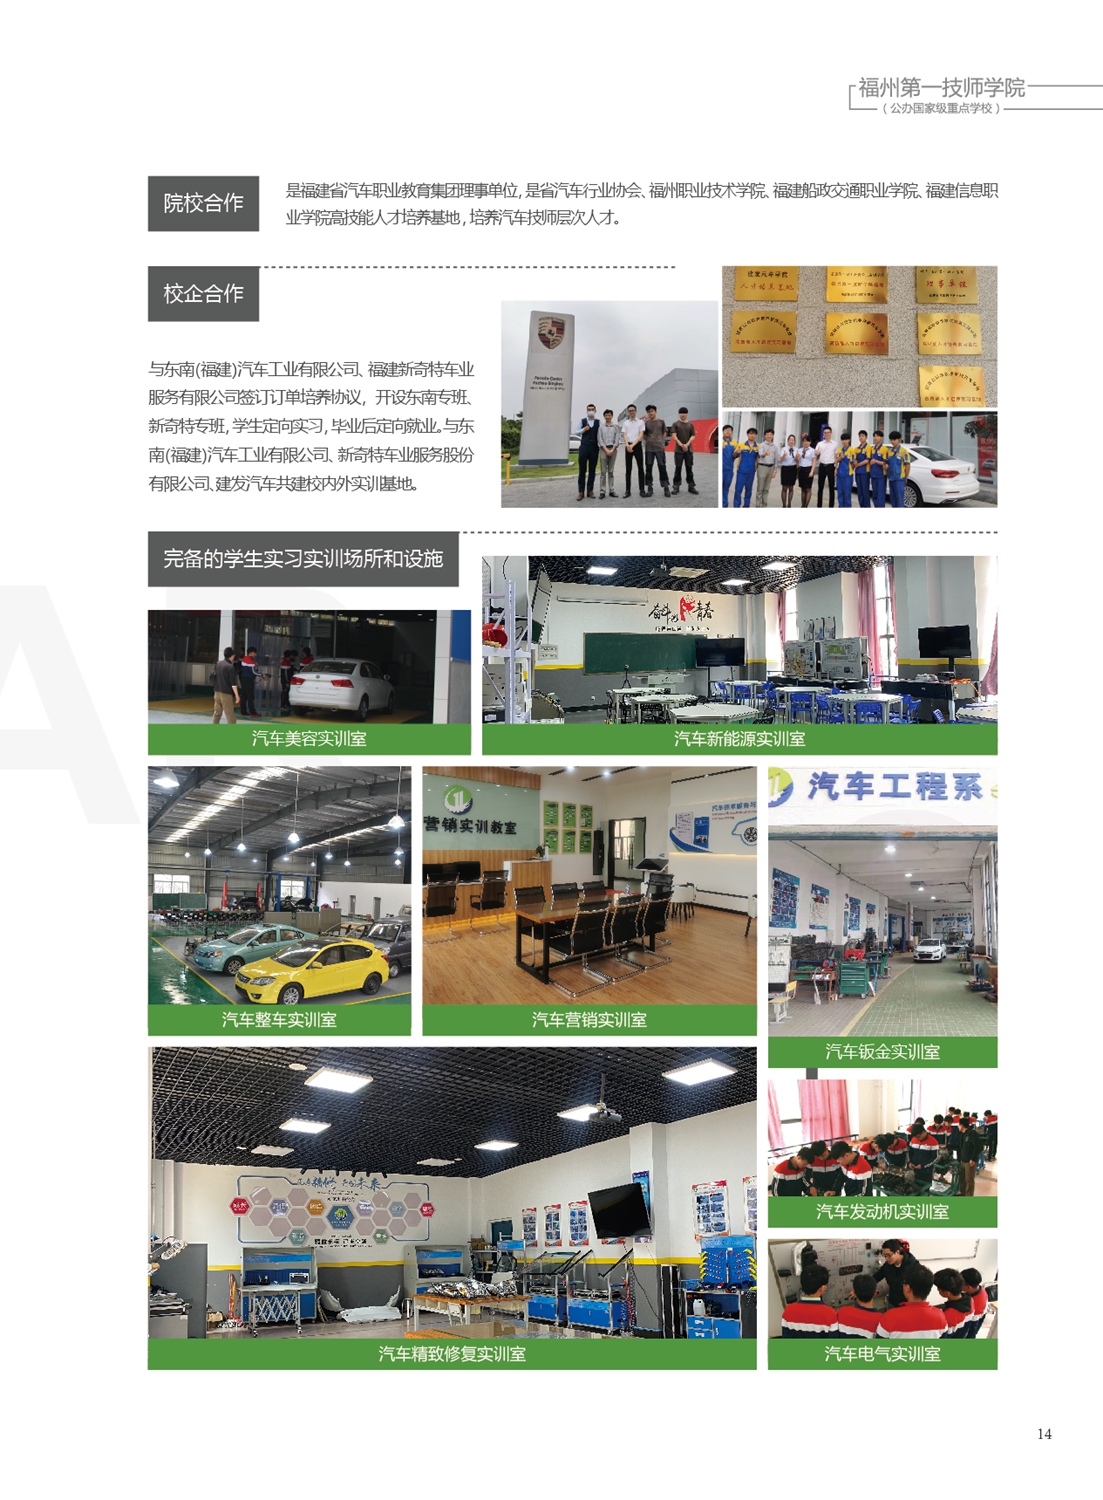 福州第一技师学院2021年招生手册(图15)